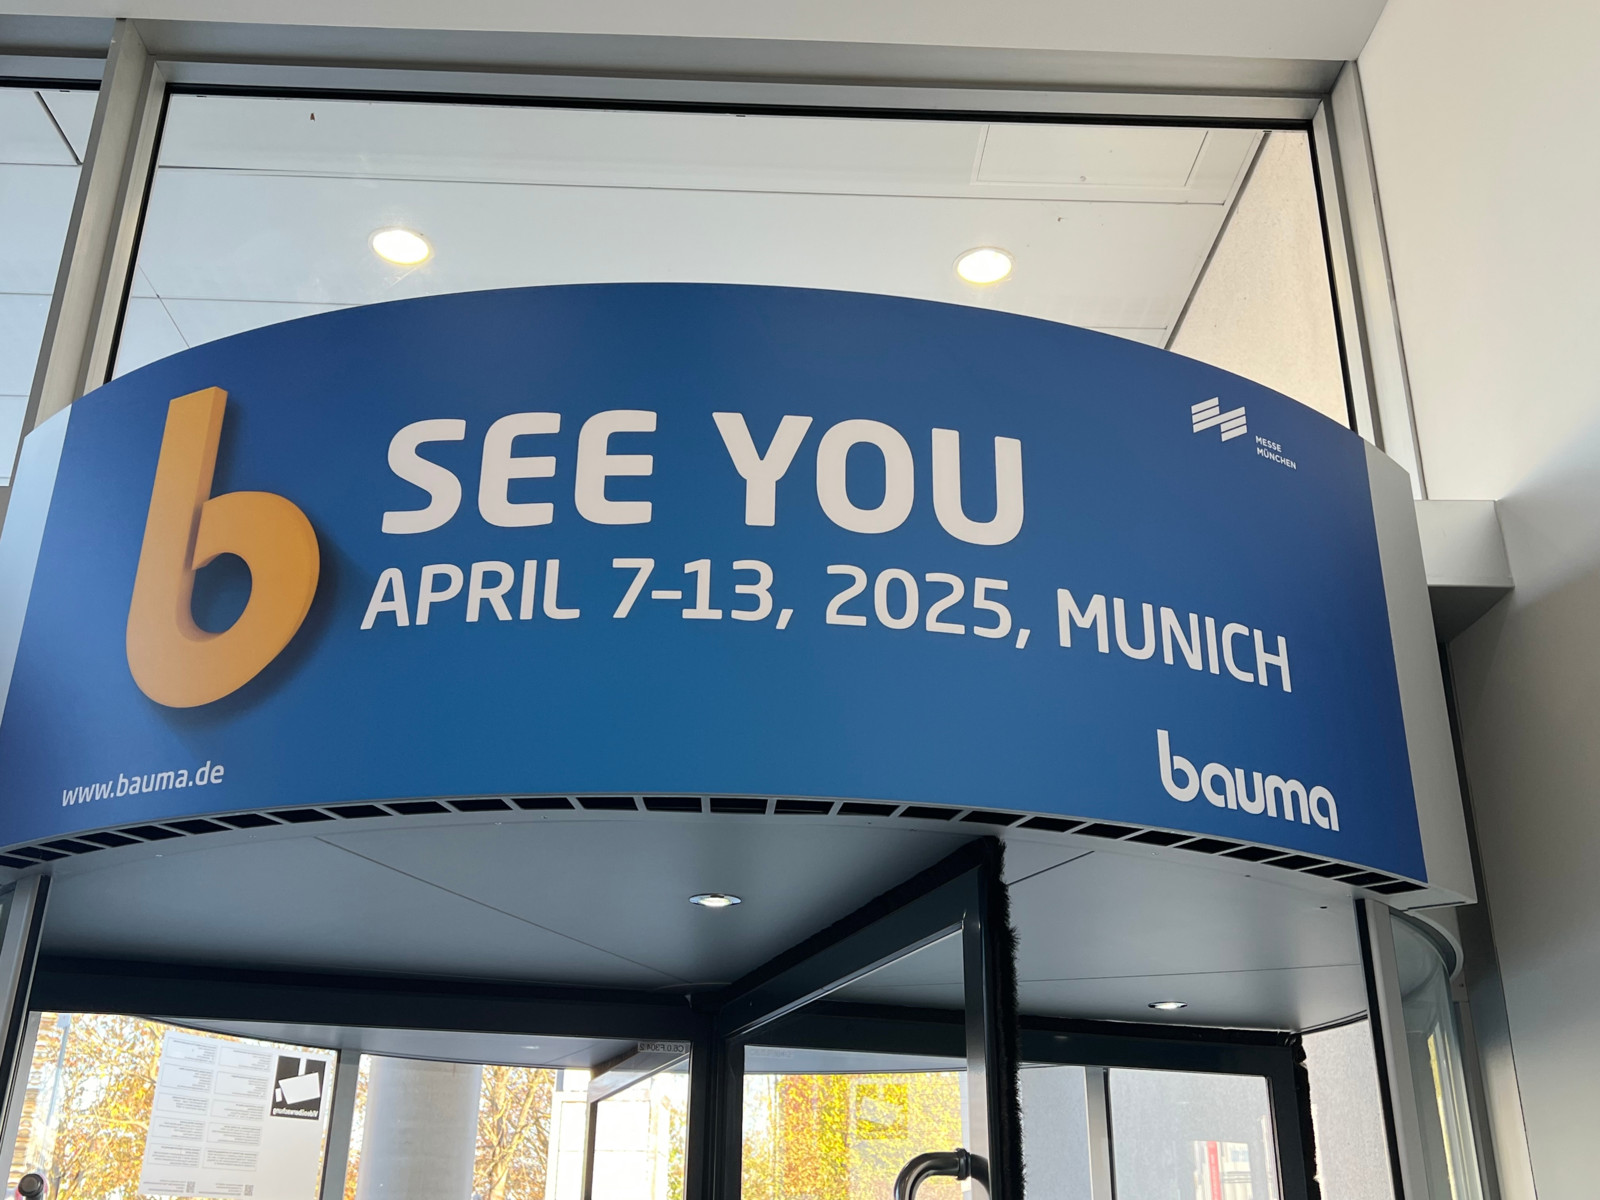 Nach der bauma ist vor der bauma: Die nächste bauma findet von 7. bis 13. April 2025 in München statt.